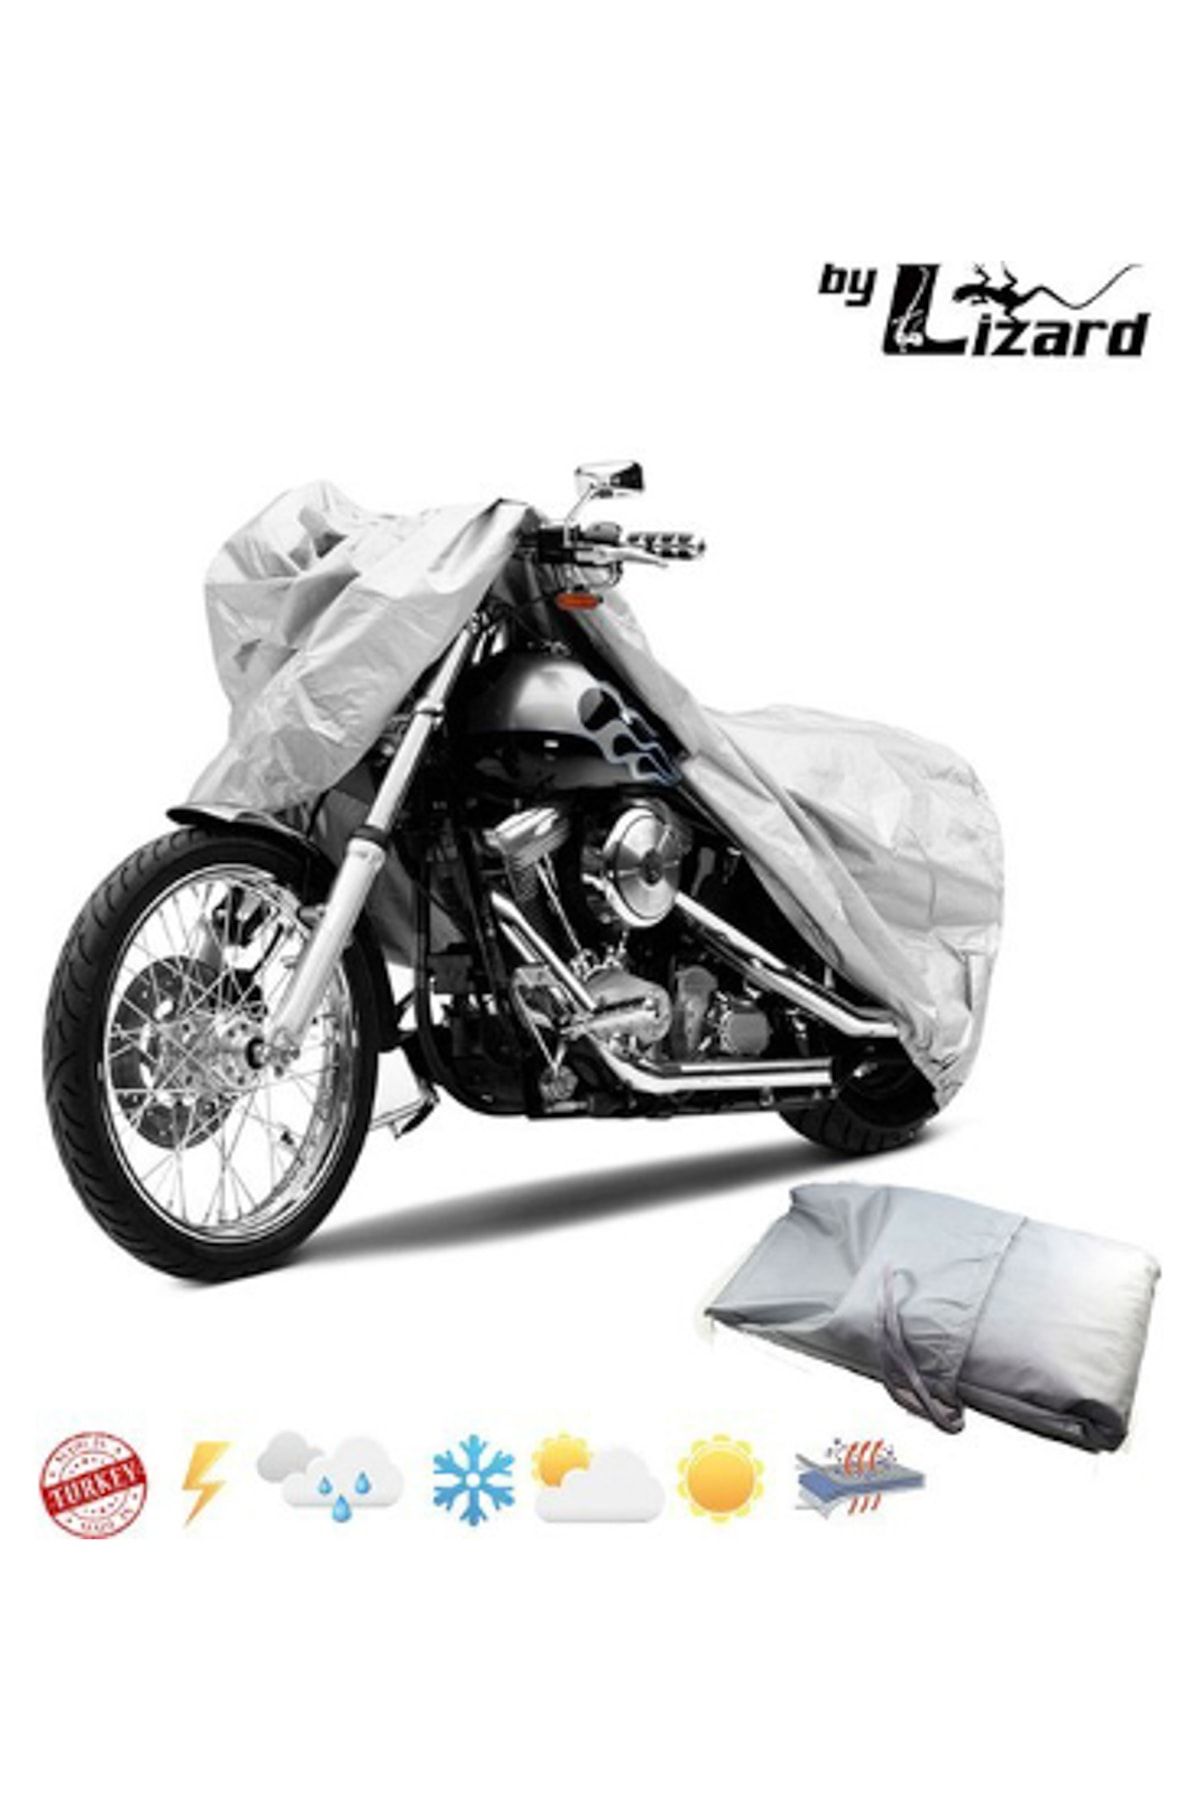 ByLizard Motoran Sprint 125 Motosiklet Brandası, Motor Örtüsü, Çadır